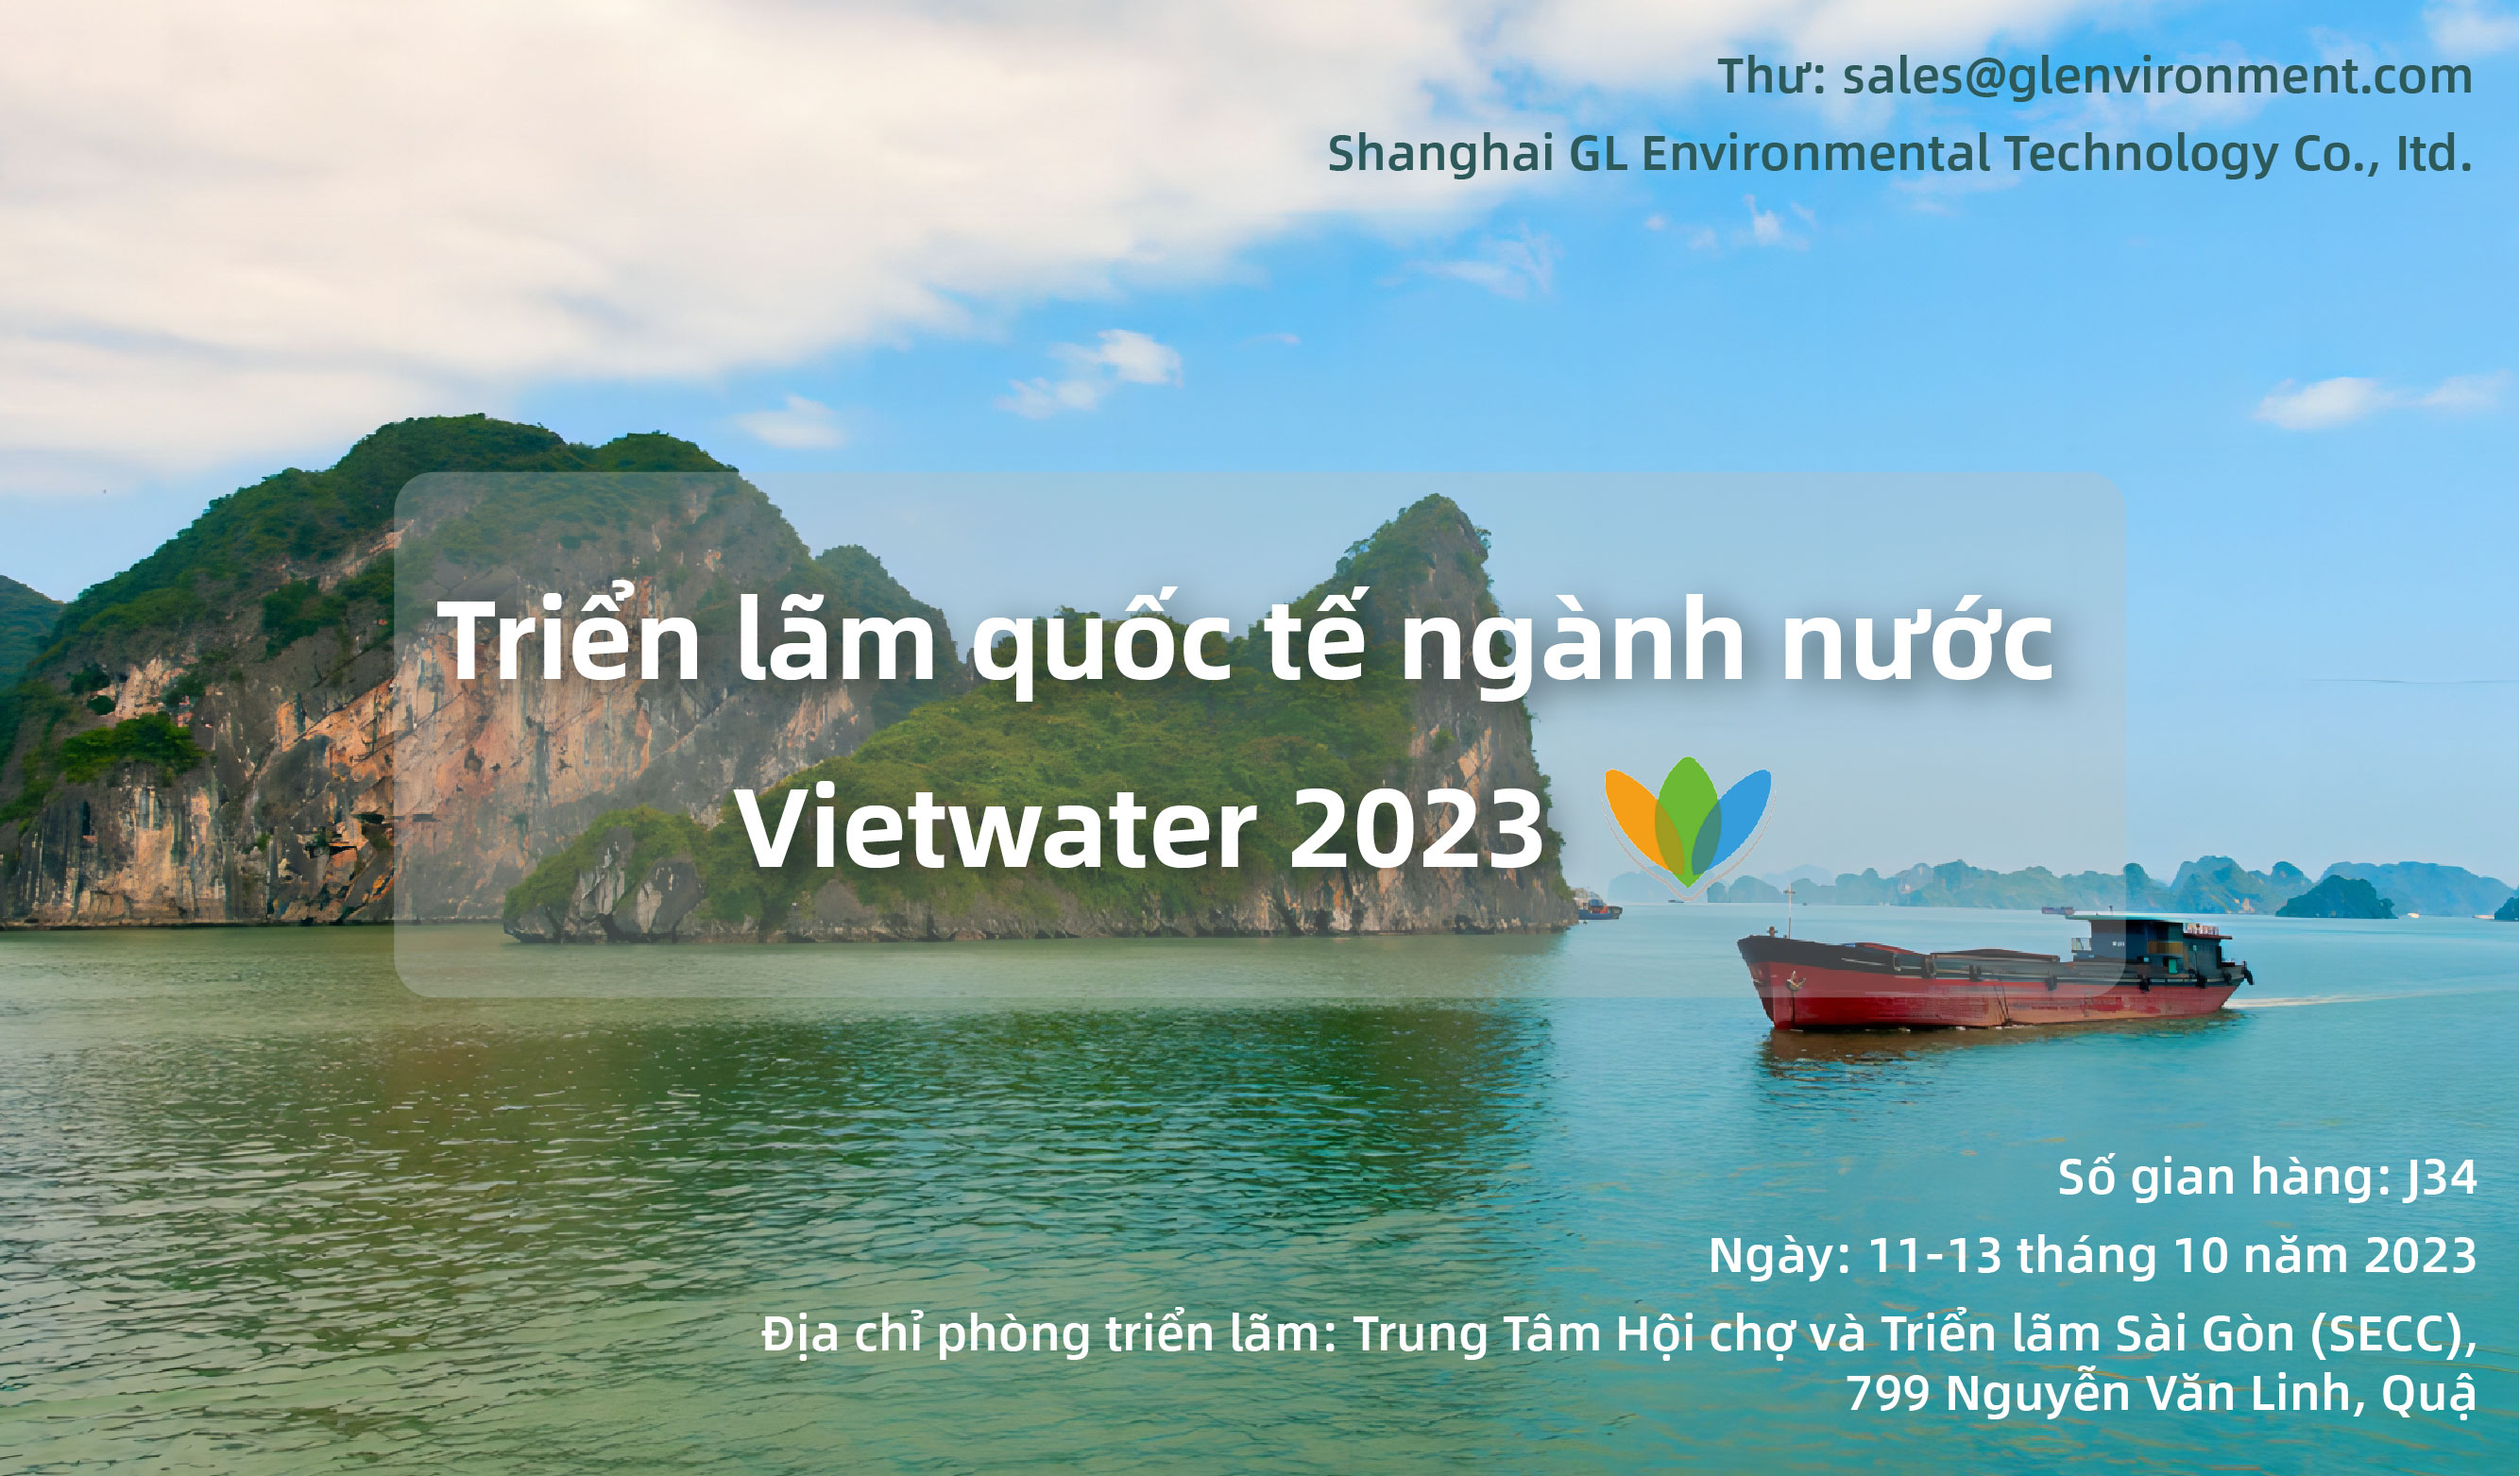 Vietwater 2023 International Water Industry Exhibition